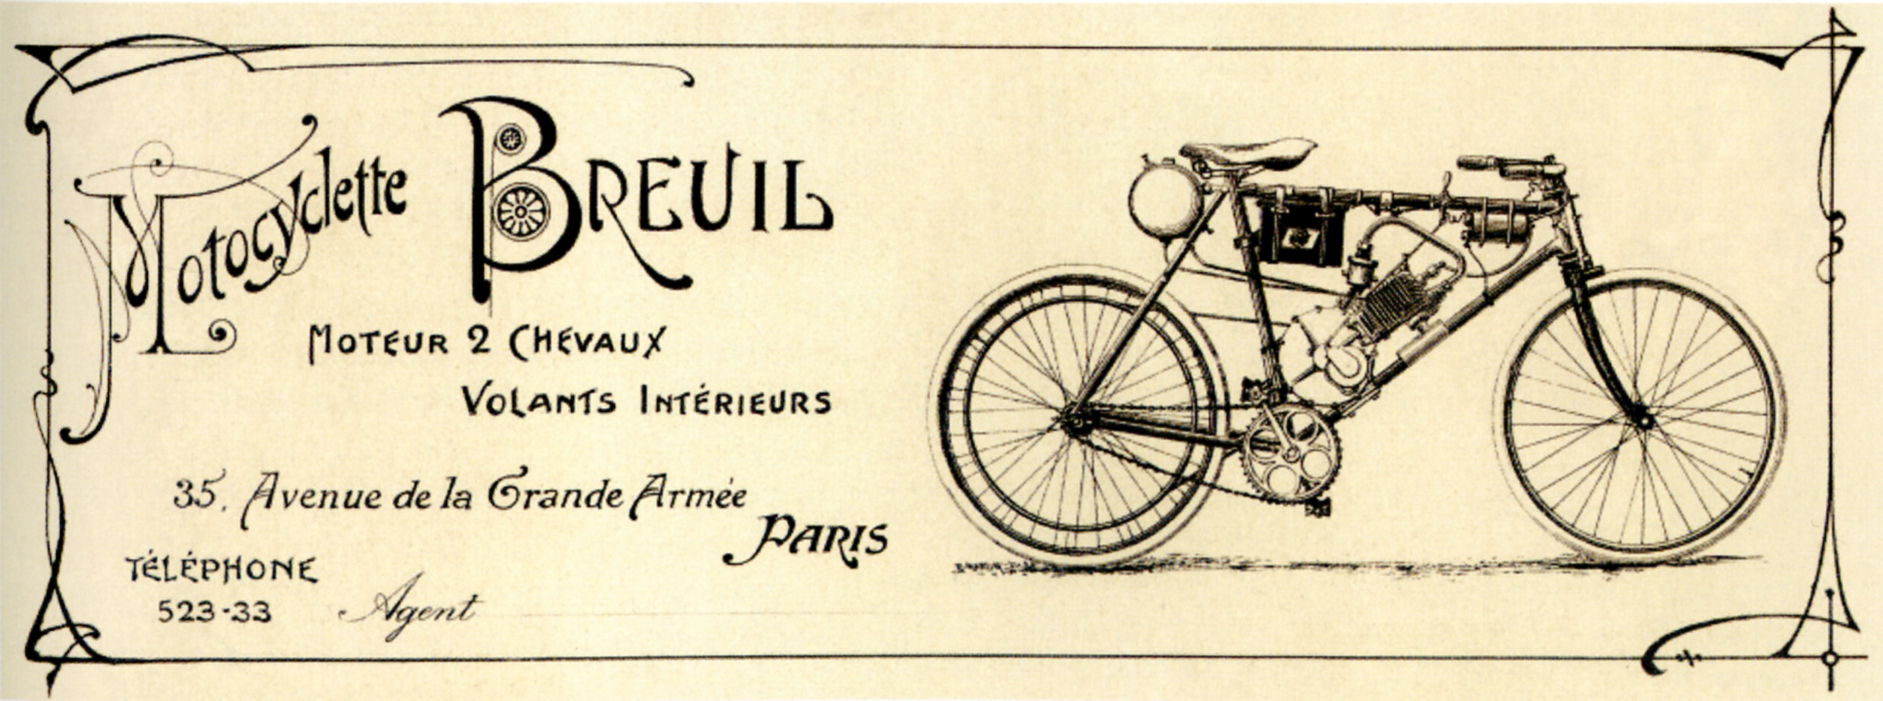 Avenue de la Grande Armée : un siècle de motos - Part III Breuil-2